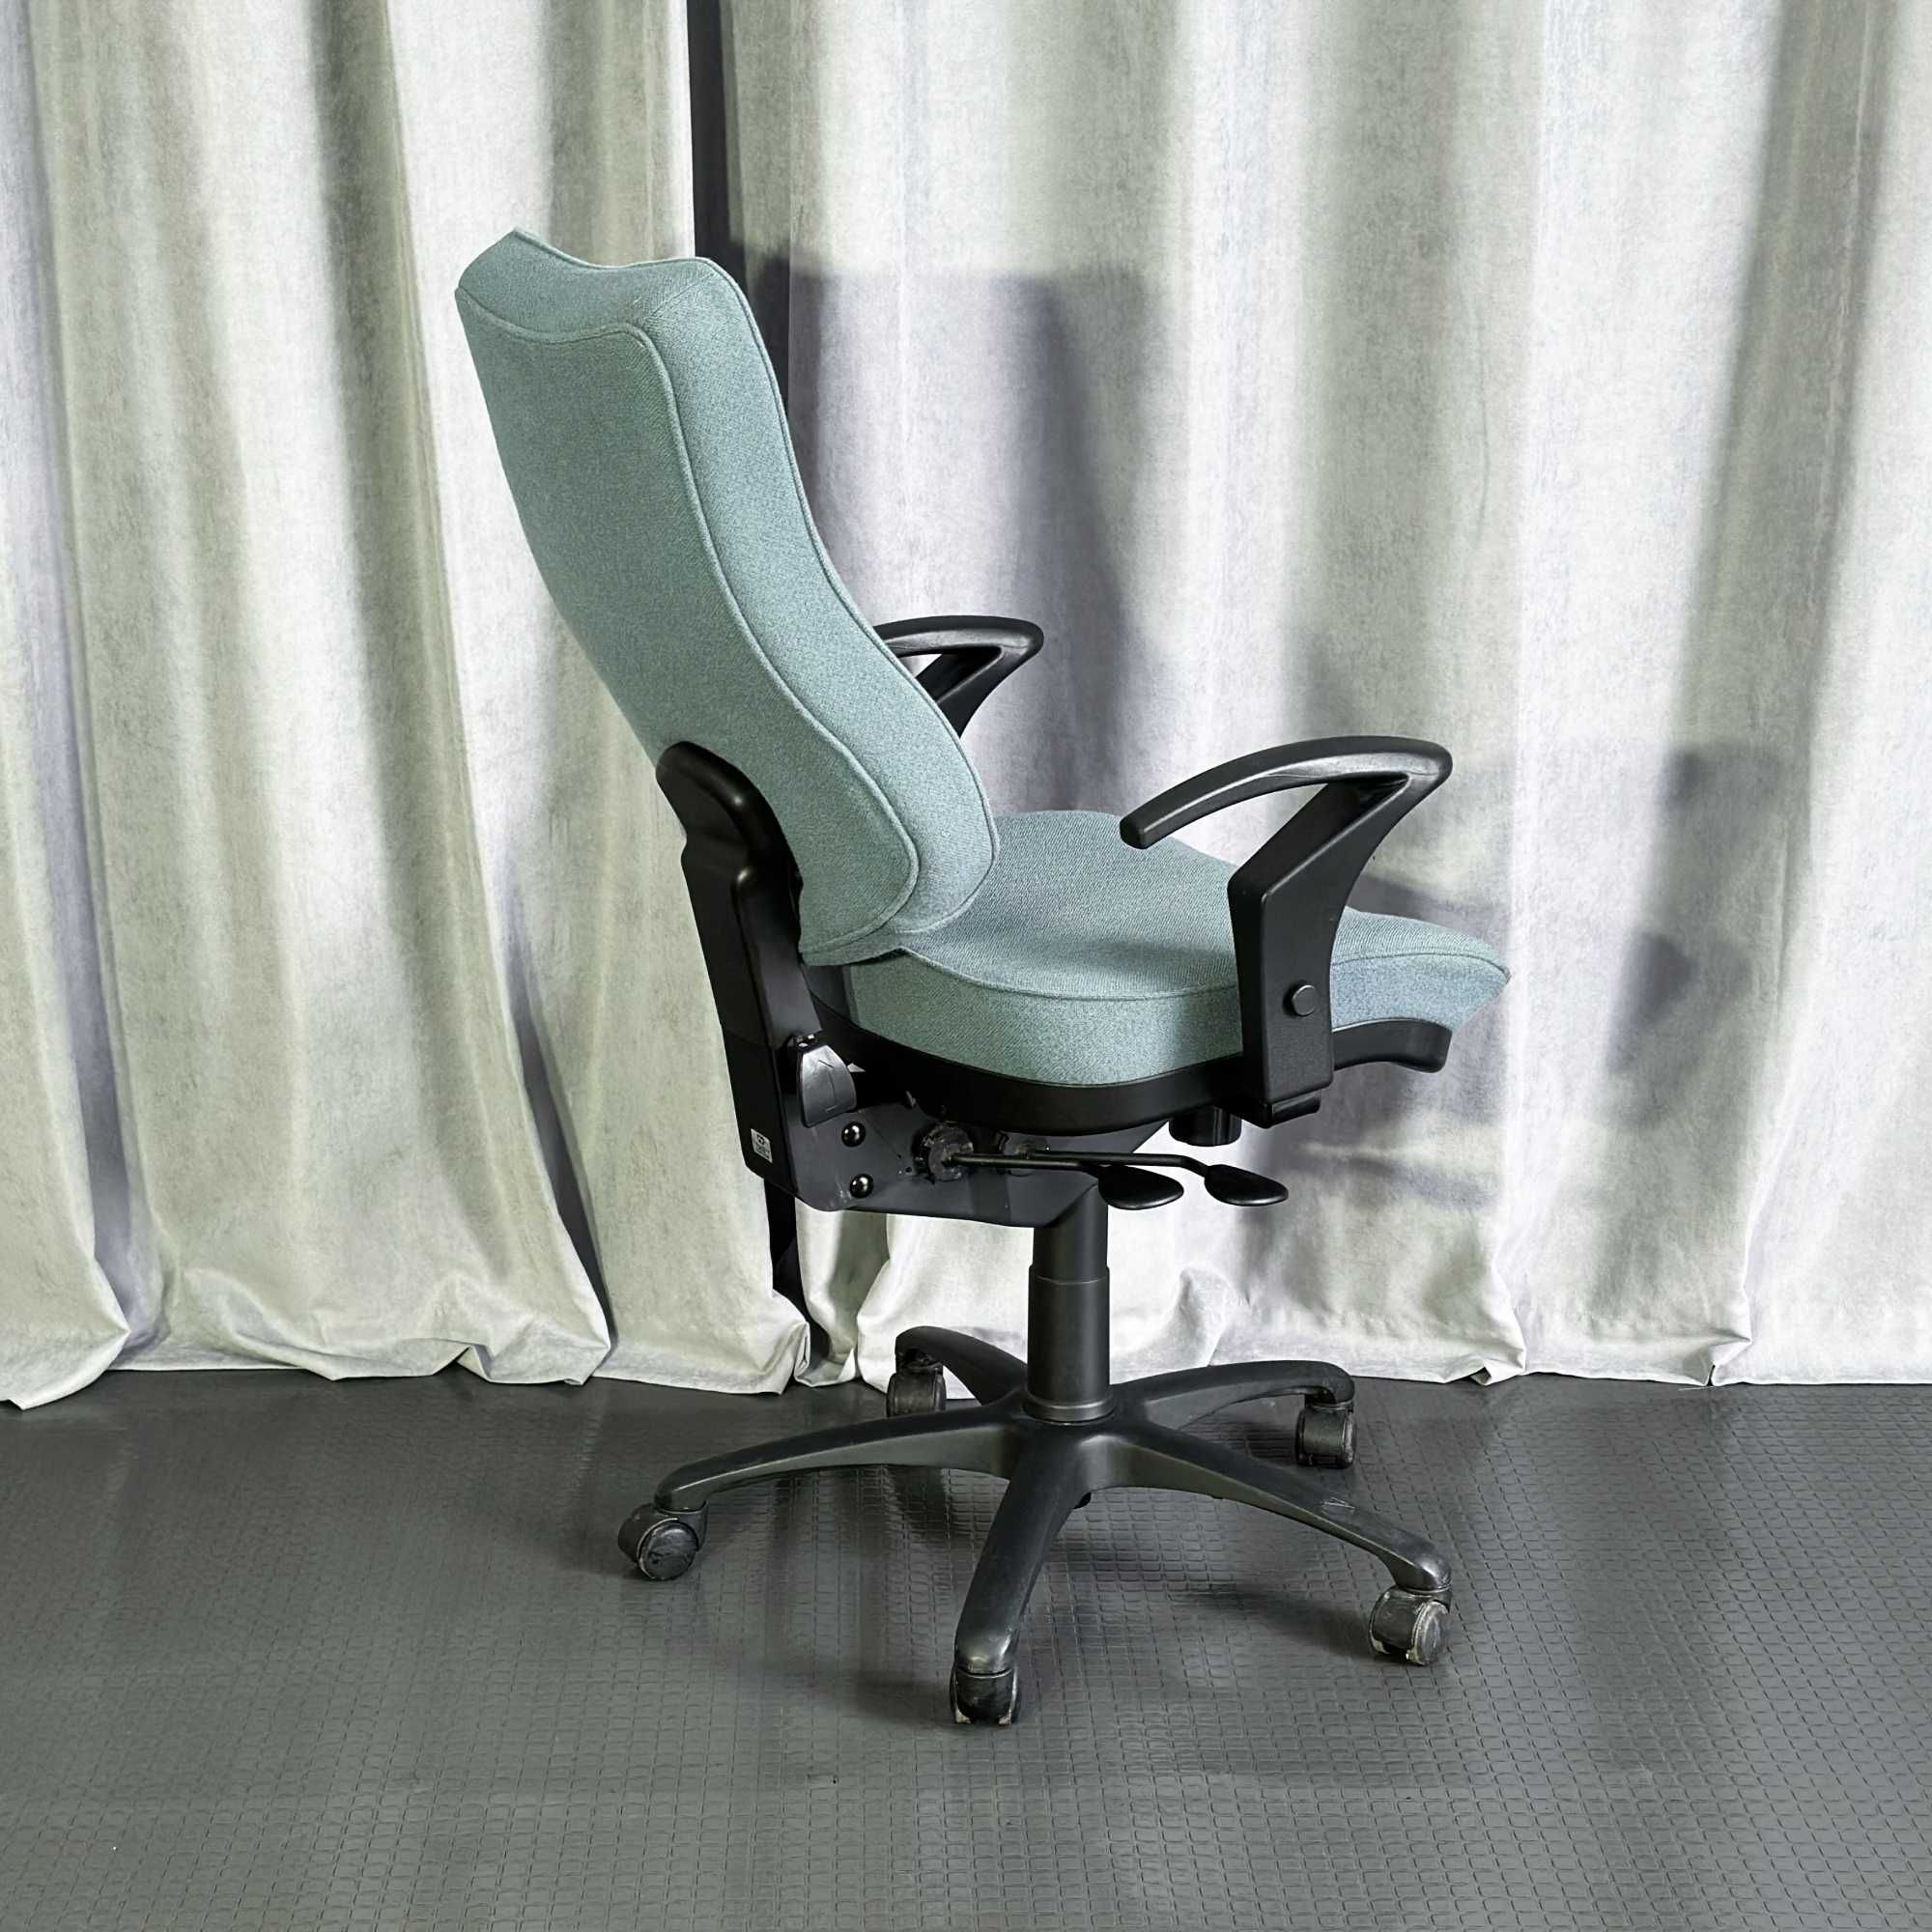 Робоче/комп'ютерне/офісне/бірюзове/оливкове крісло/офісні крісла/меблі